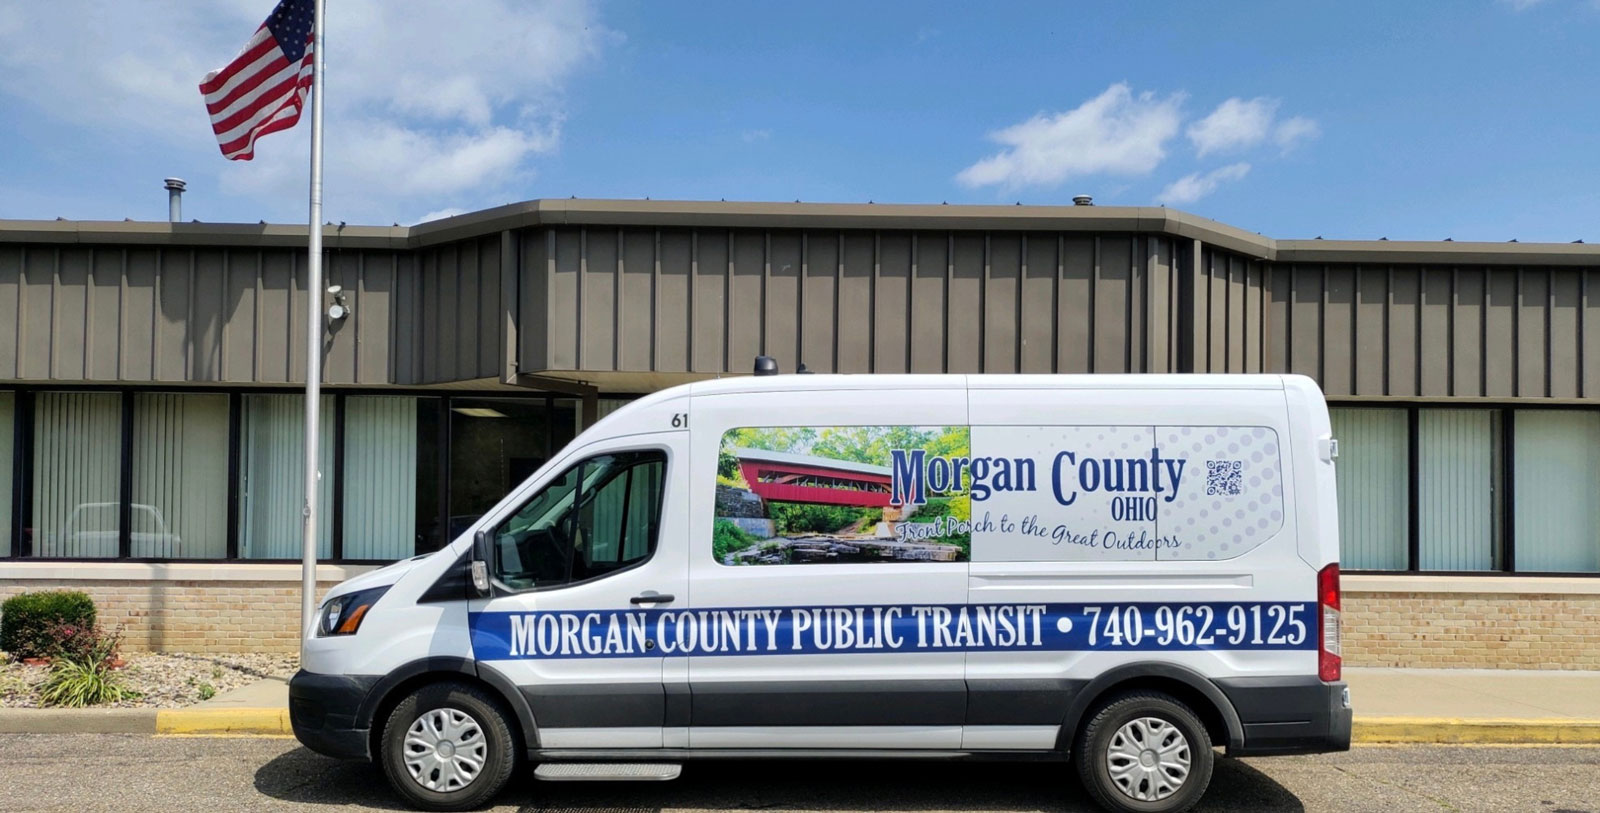 Morgan County Ohio Public Transit Van